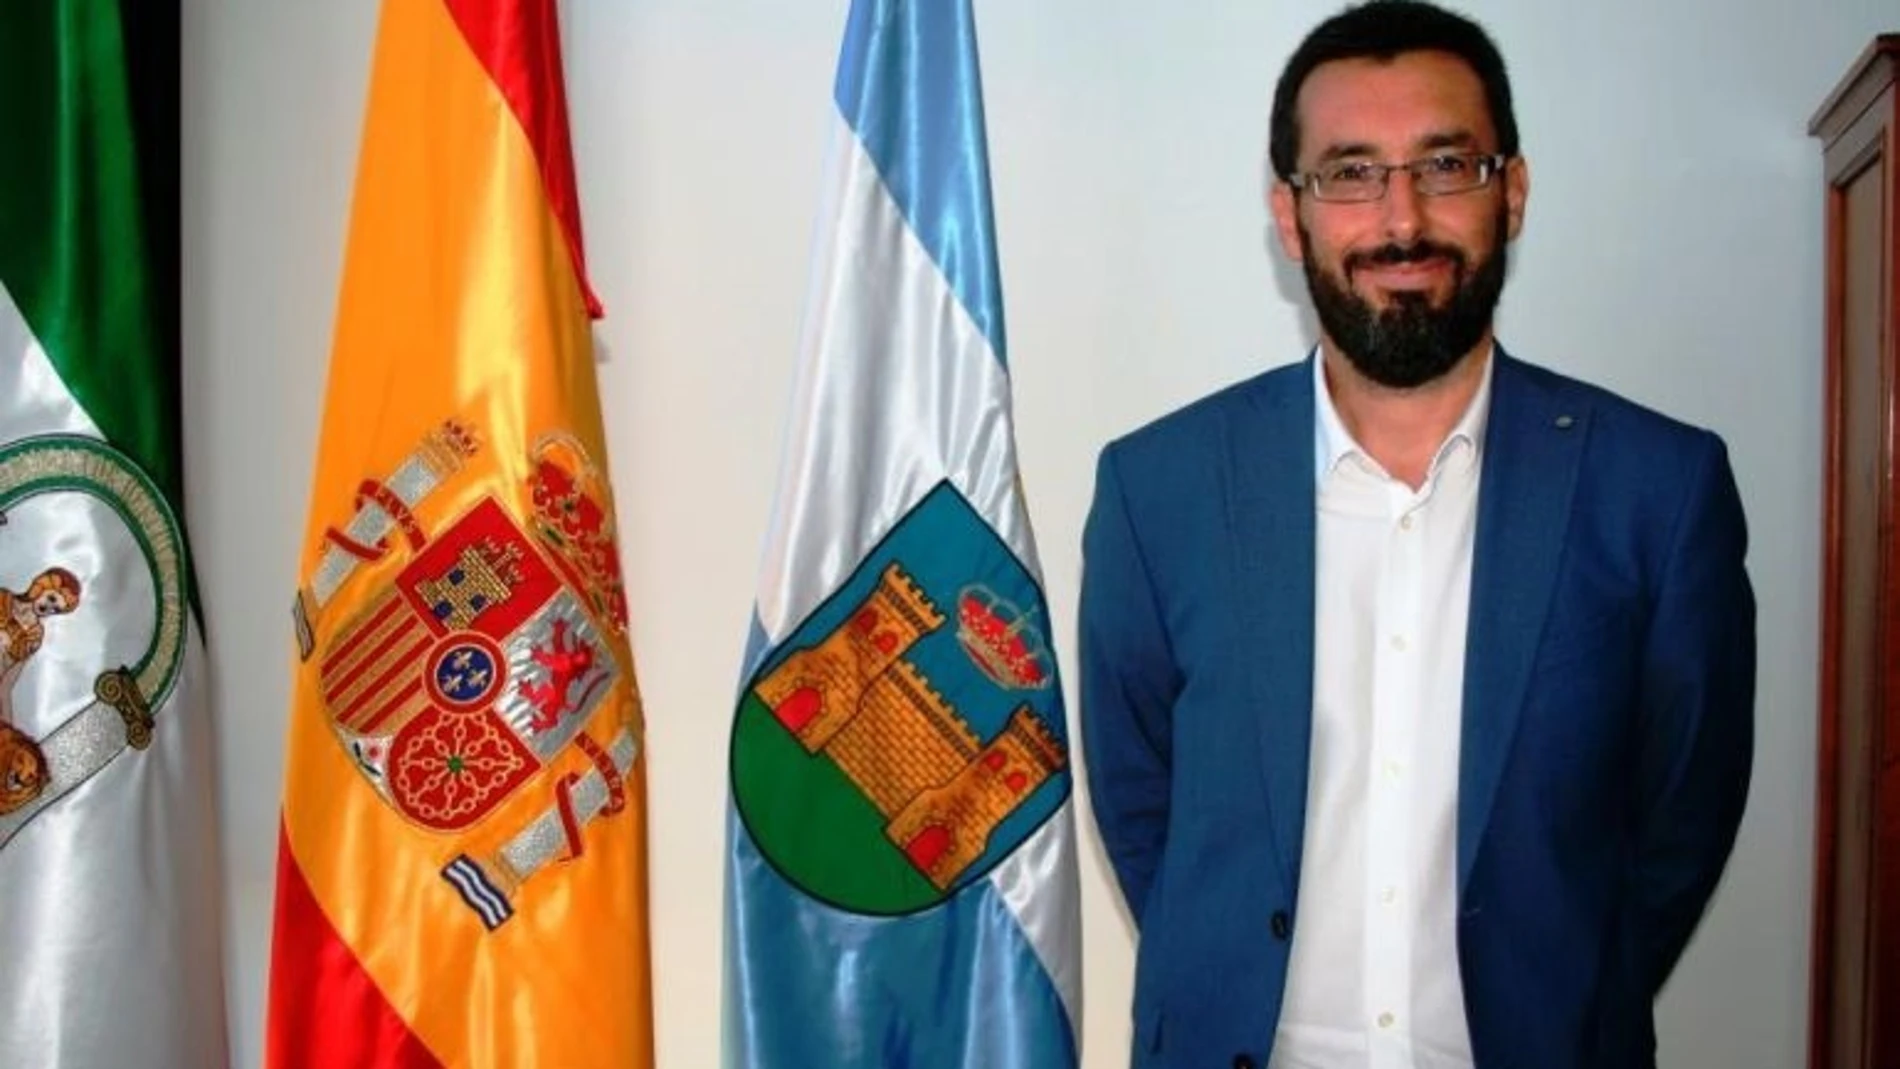 José Juan Franco Rodríguez, alcalde de La Línea de la Concepción
AYUNTAMIENTO DE LA LÍNEA DE LA C
05/08/2022